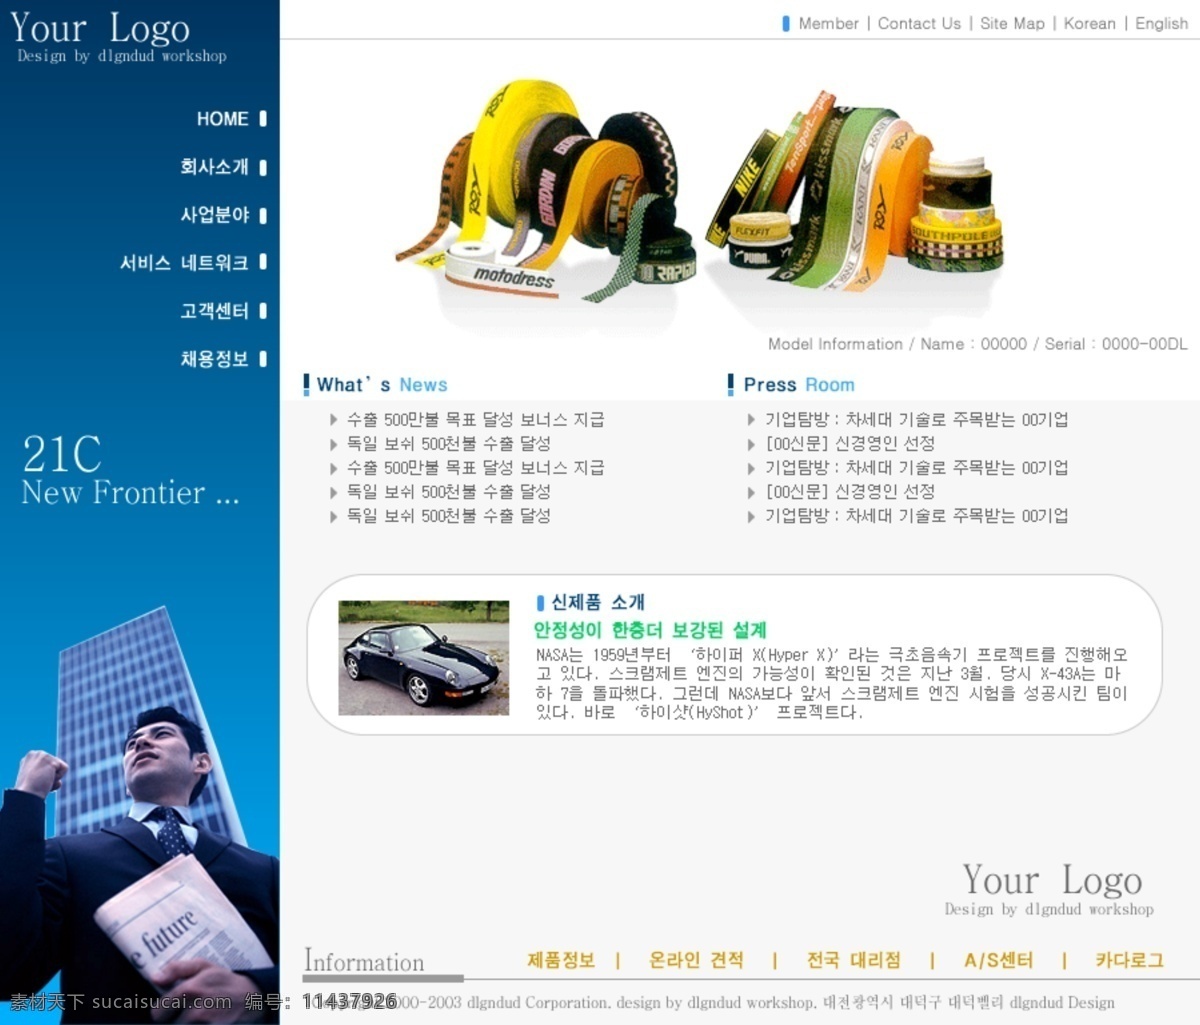 韩 版 企业网站 韩文 企业 网页模板素材 网页素材 网页模板